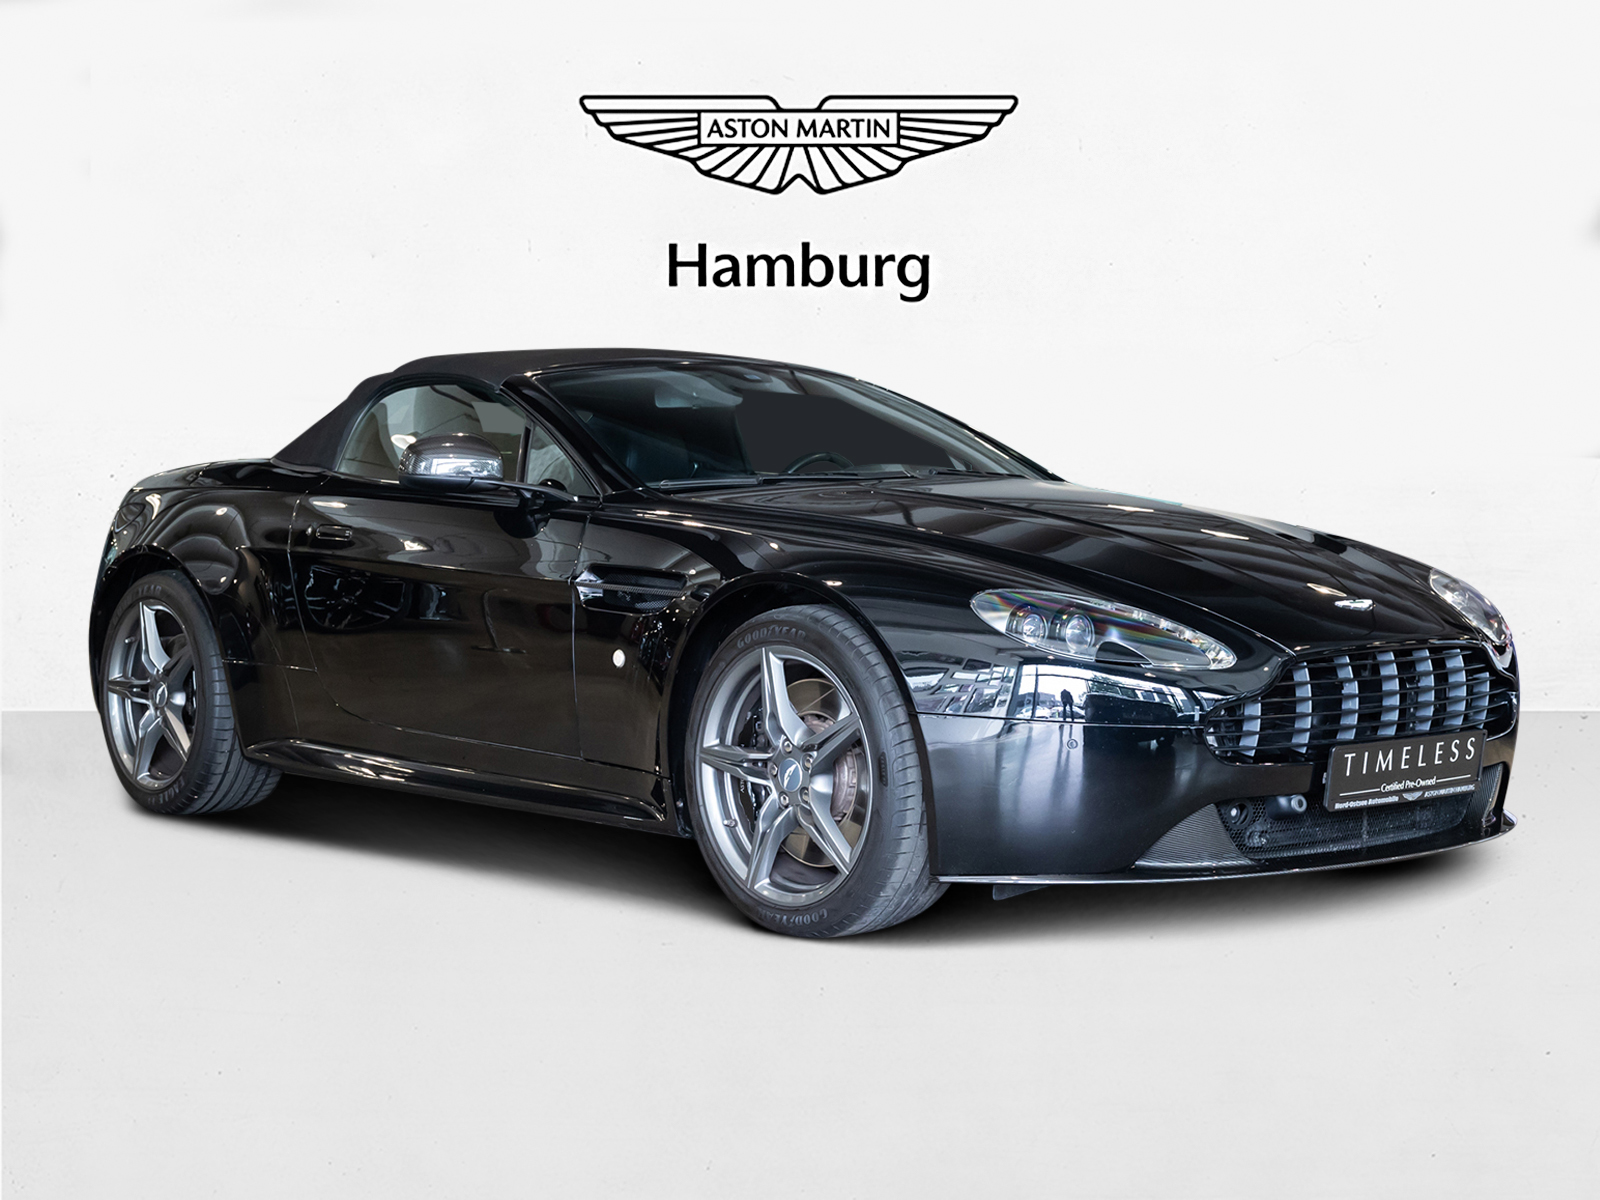 Aston Martin V8 Vantage S Roadster - Aston Martin Hamburg